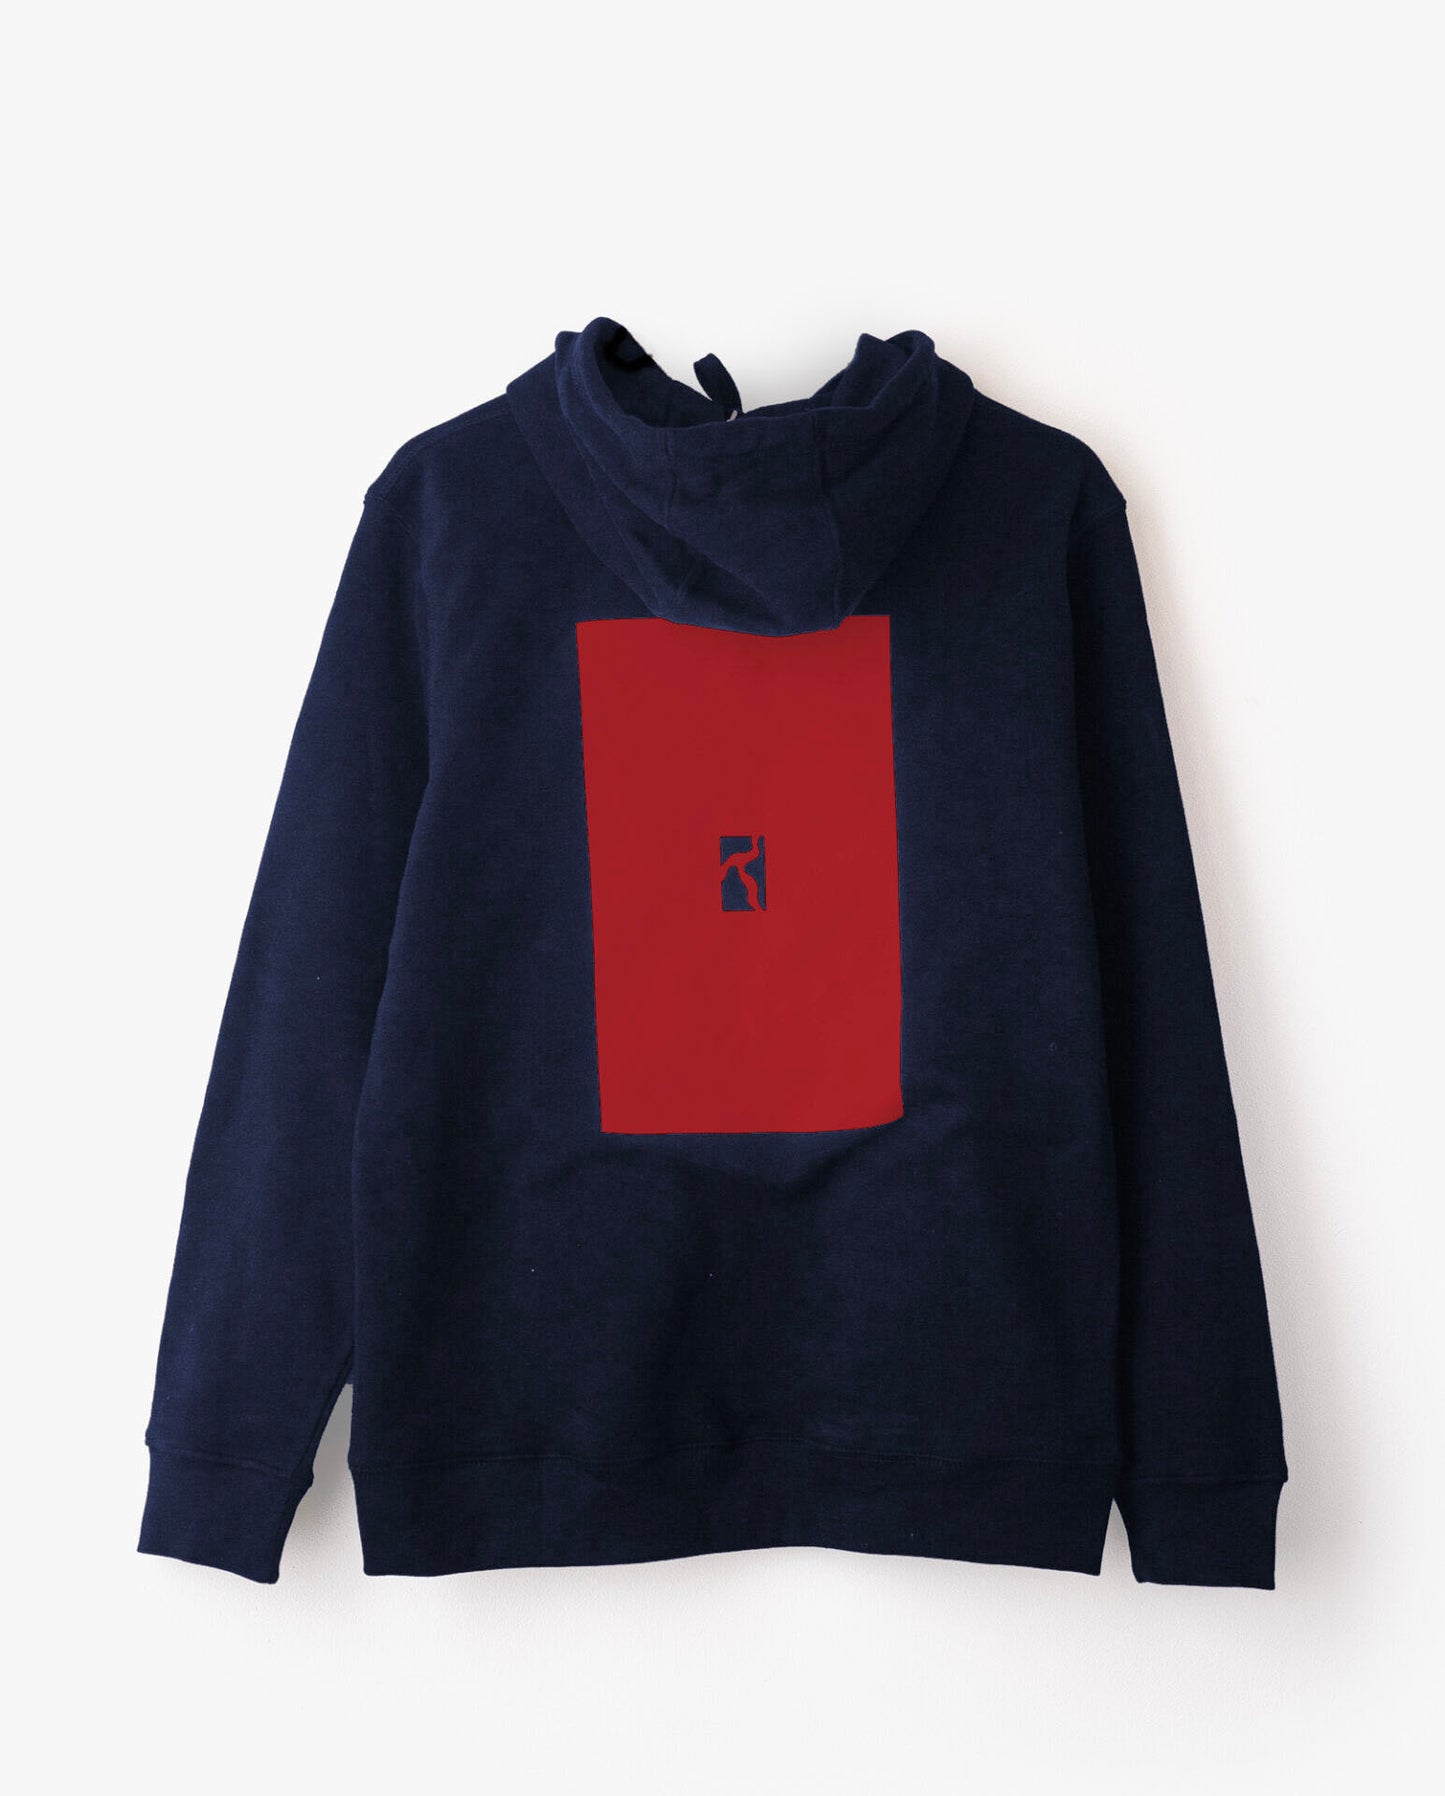 Box hoodie Navy/red